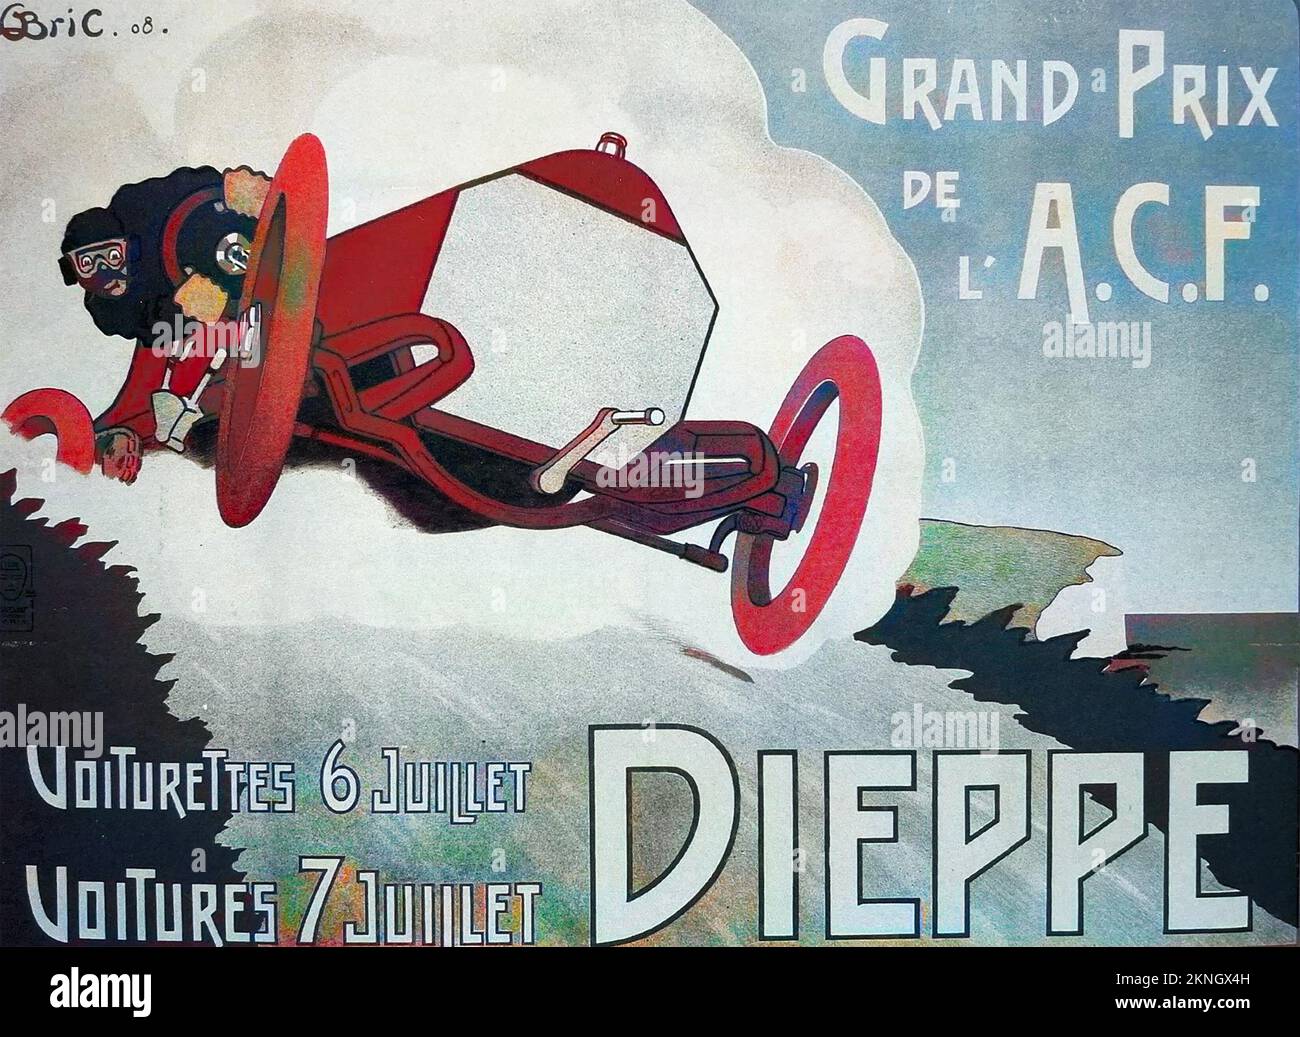 DIEPPE GRAND PRIX 1908 Trotz des Humors in diesem Bild im eigentlichen Rennen starben ein Fahrer und sein Mechaniker, als ihr Auto umkippte - die ersten Todesopfer in der Geschichte des Grand Prix. Stockfoto